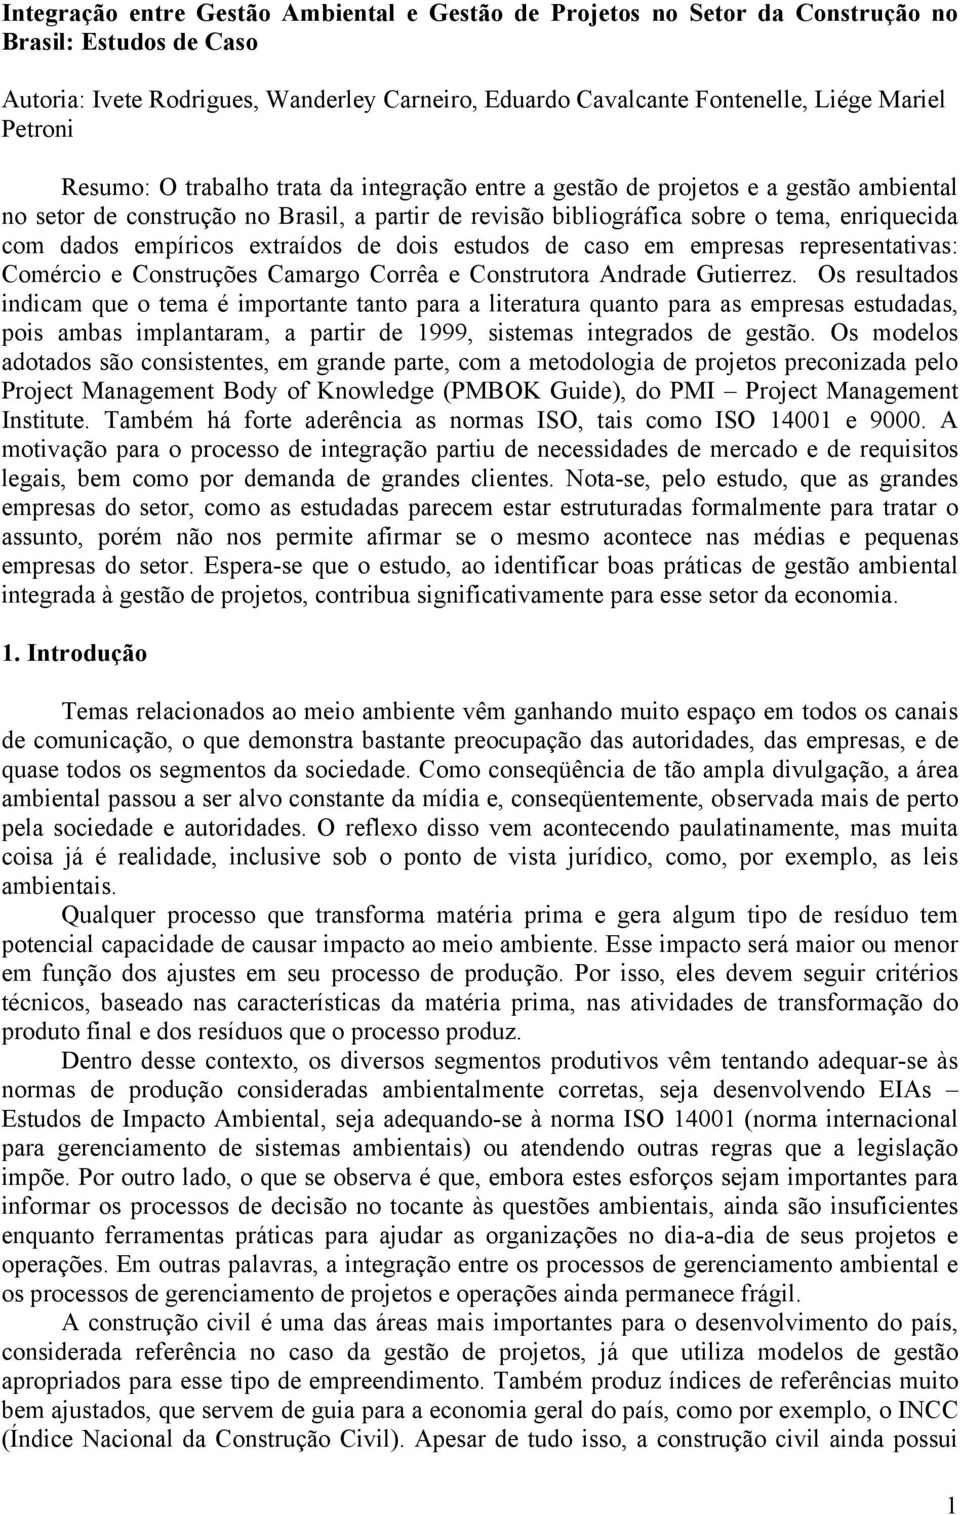 empíricos extraídos de dois estudos de caso em empresas representativas: Comércio e Construções Camargo Corrêa e Construtora Andrade Gutierrez.